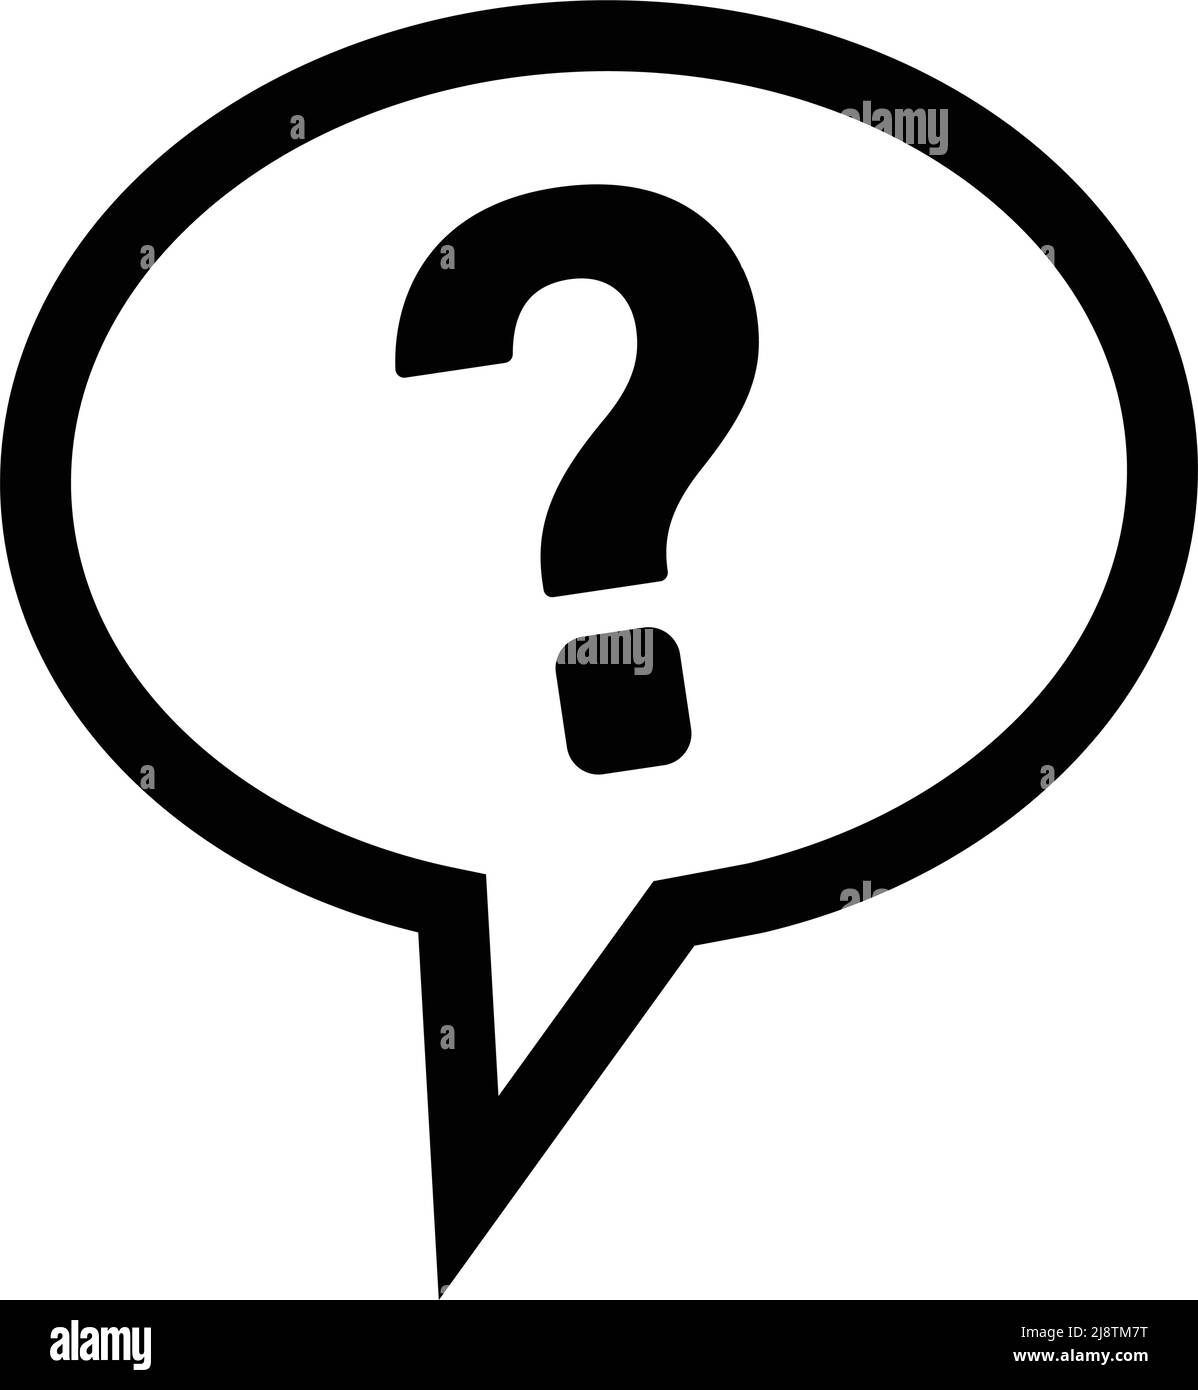 Question mark icon in a speech balloon. Editable vector. Stock Vector